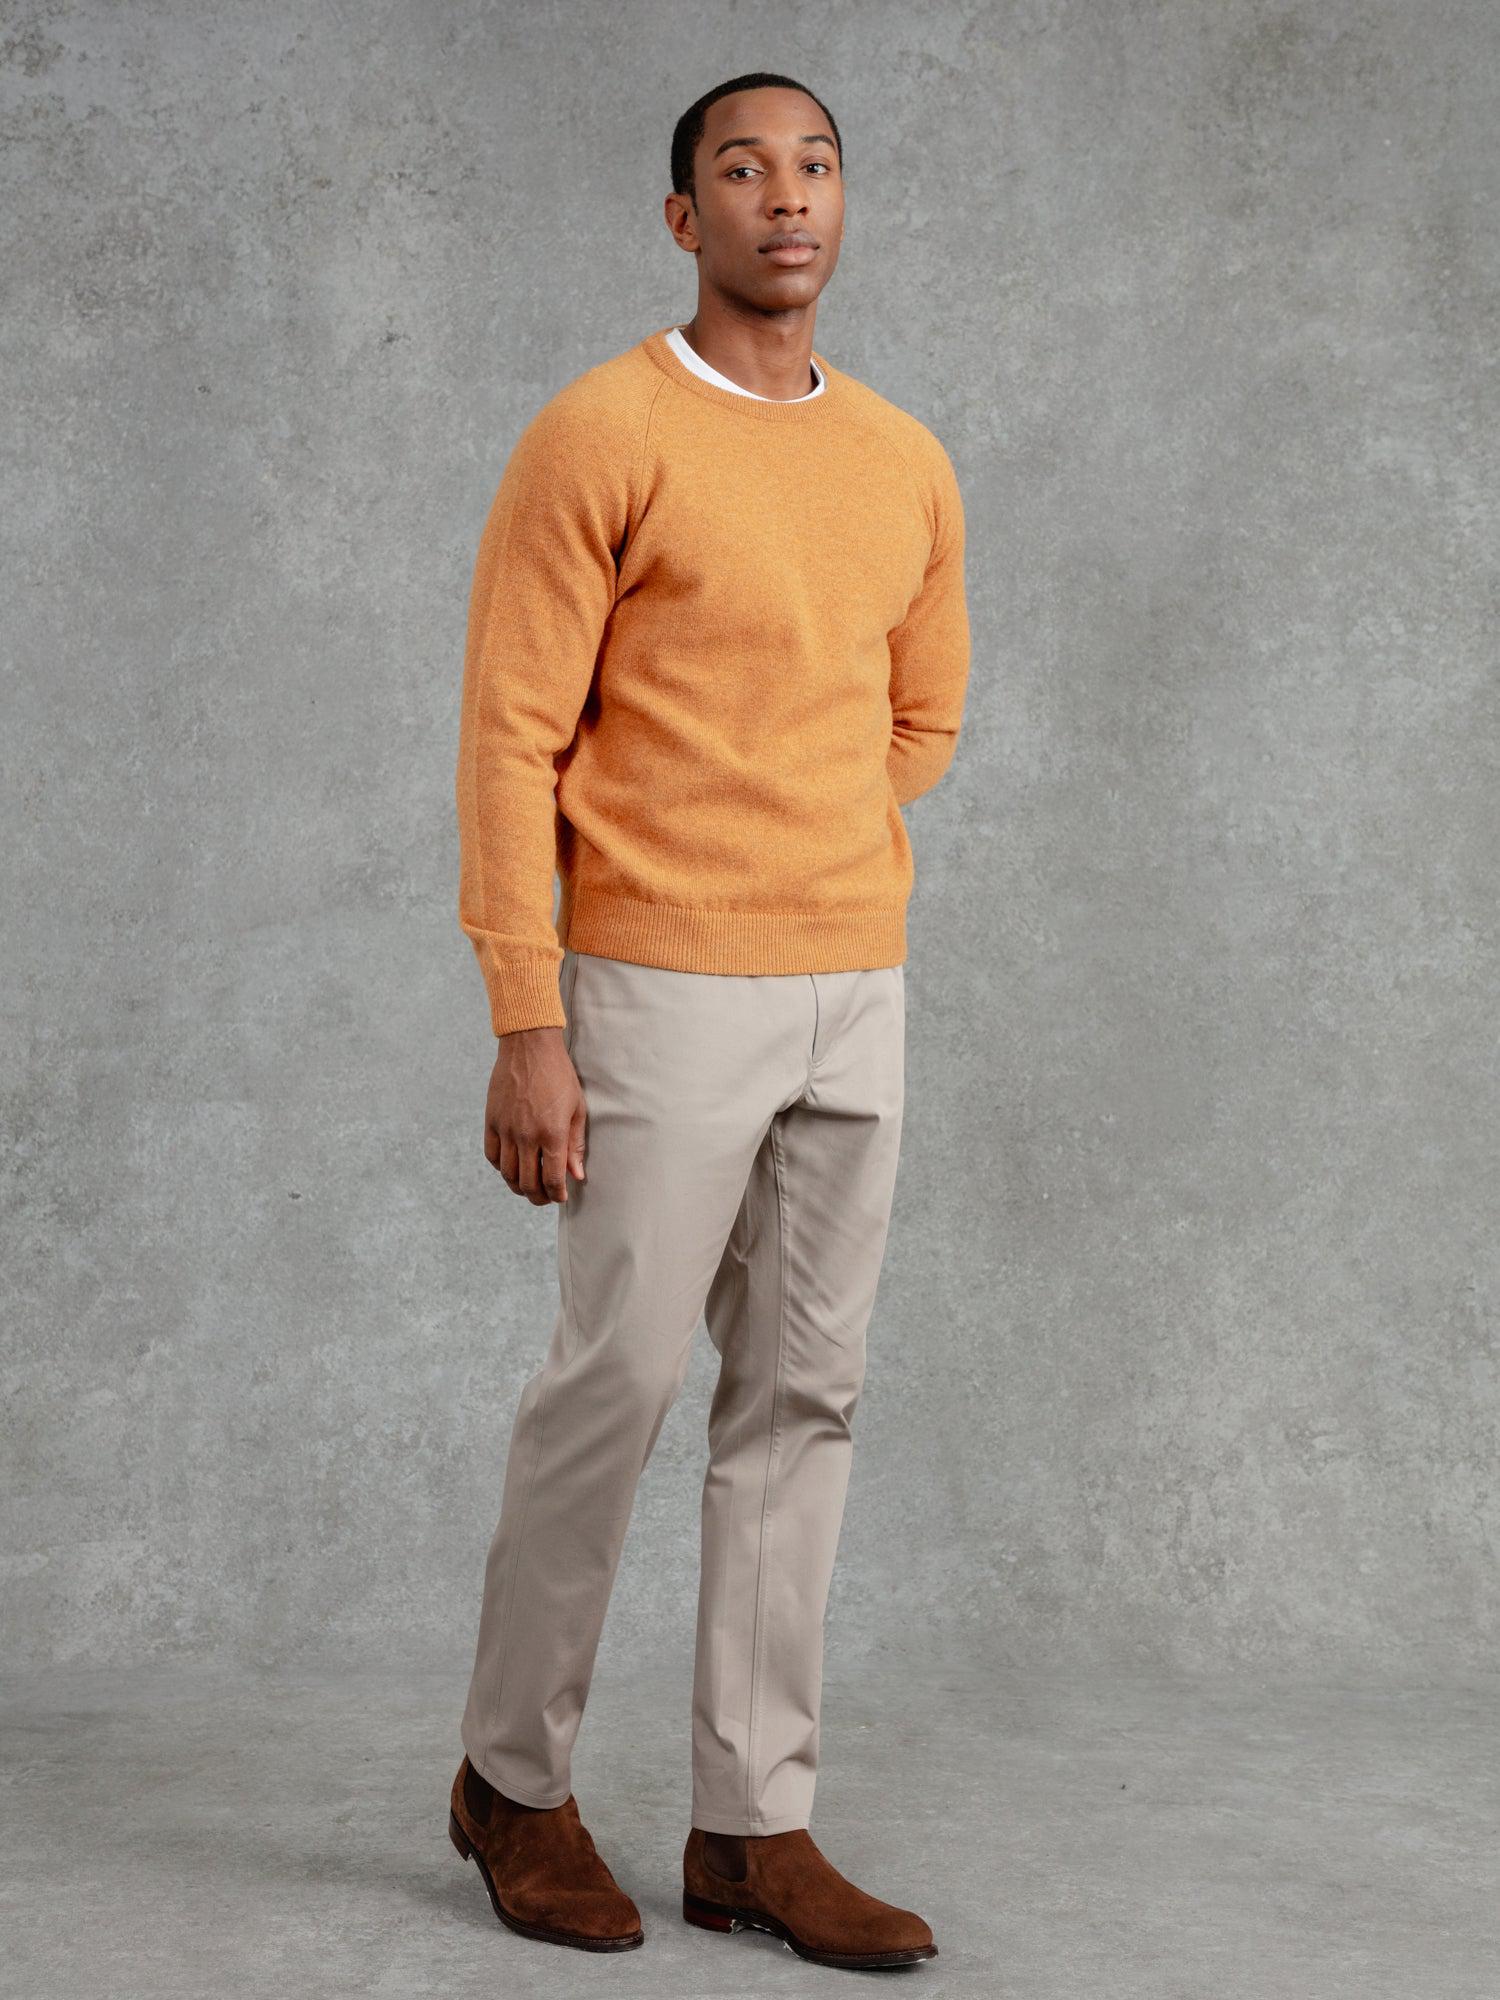 The Merino Wool Sweatshirt – PrivateWhite V.C.